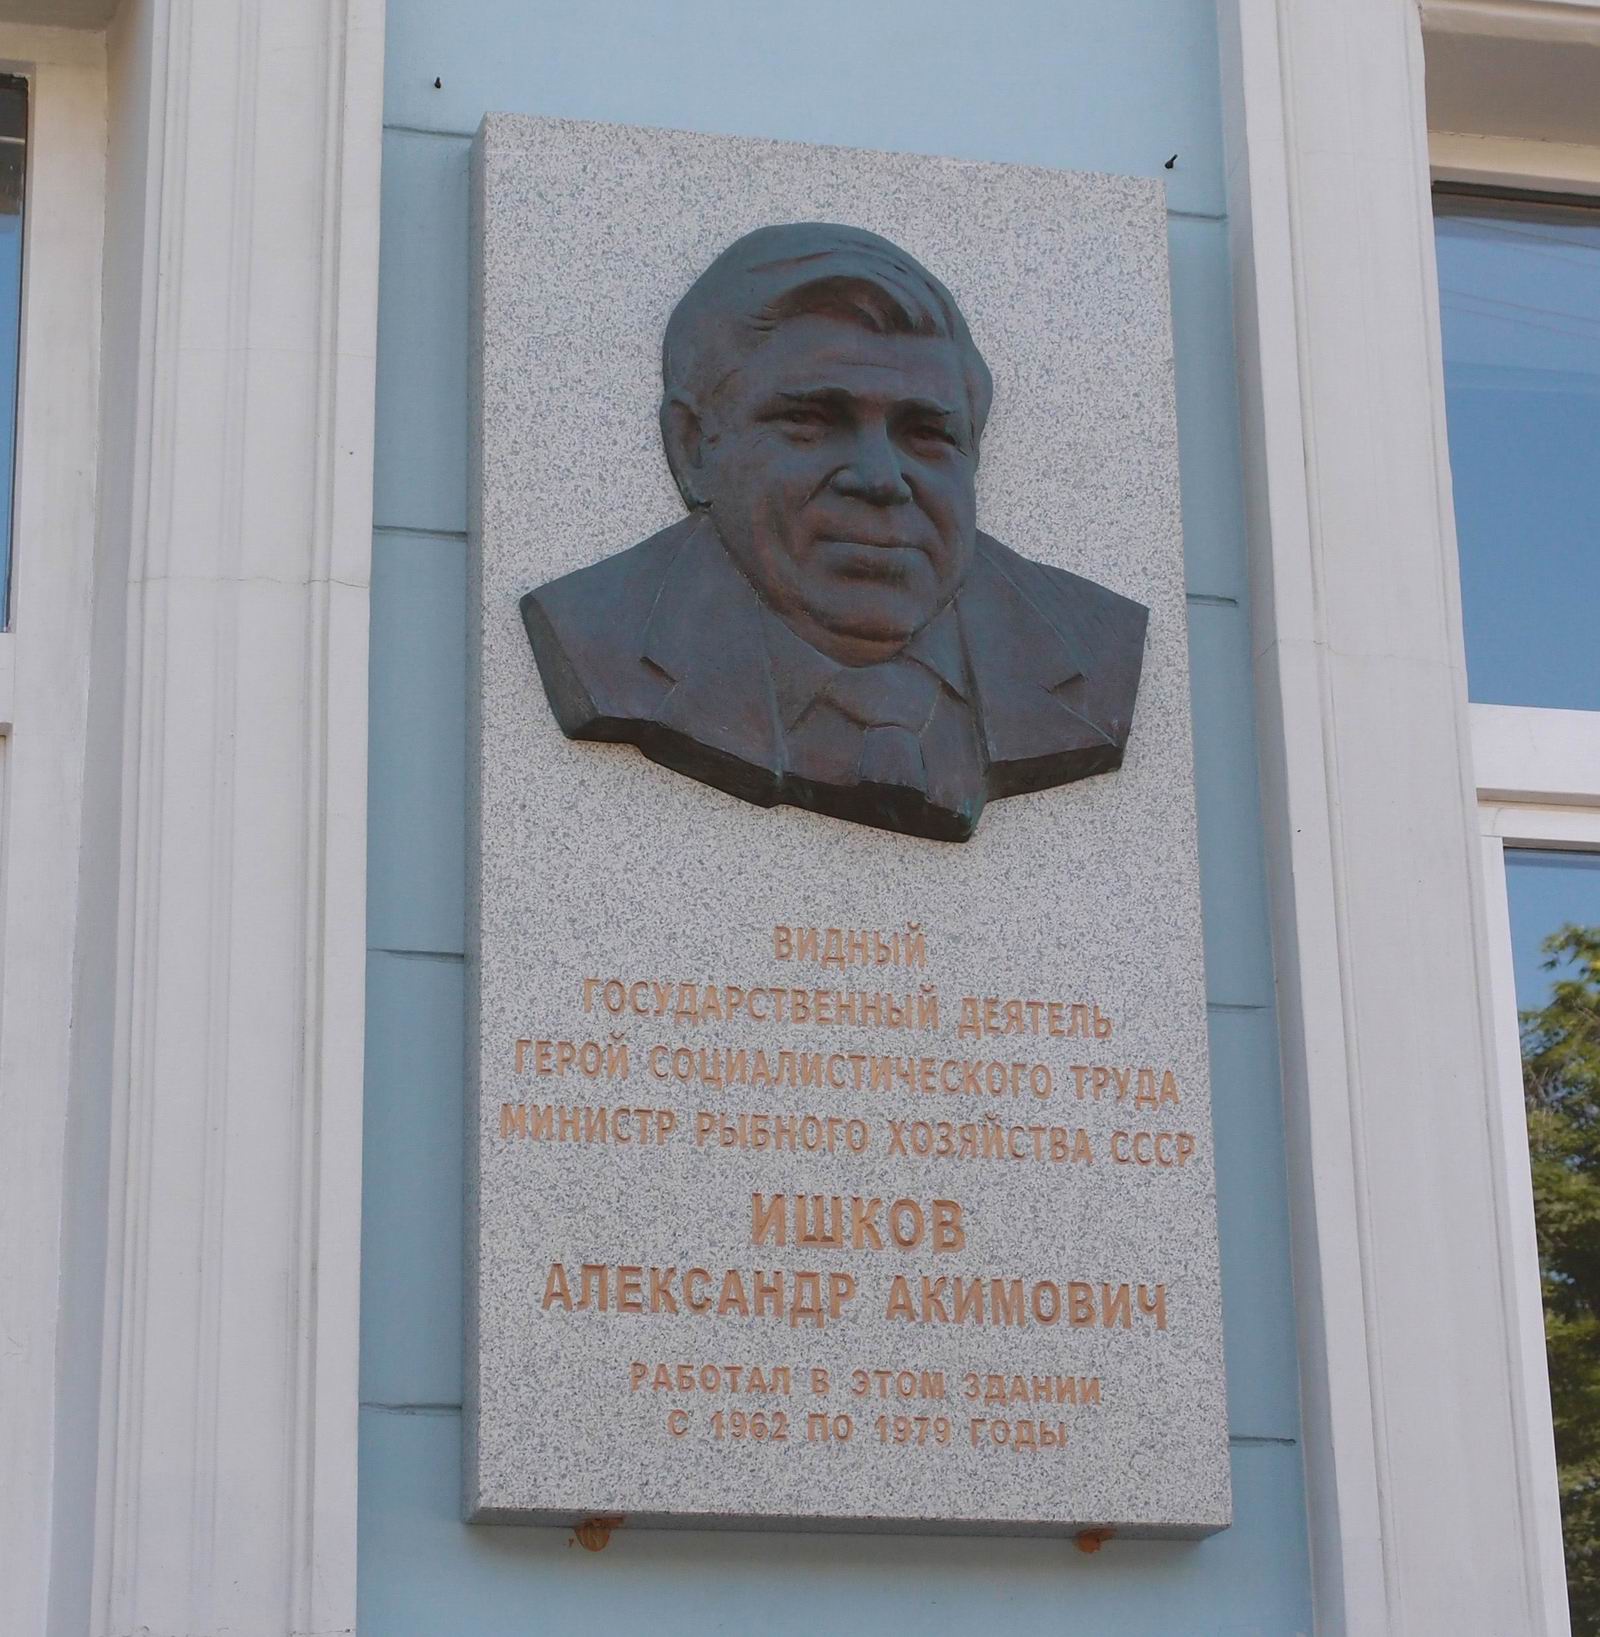 Мемориальная доска Ишкову А.А. (1905–1988),  ск. Ф.Согоян, на Рождественском бульваре, дом 12.